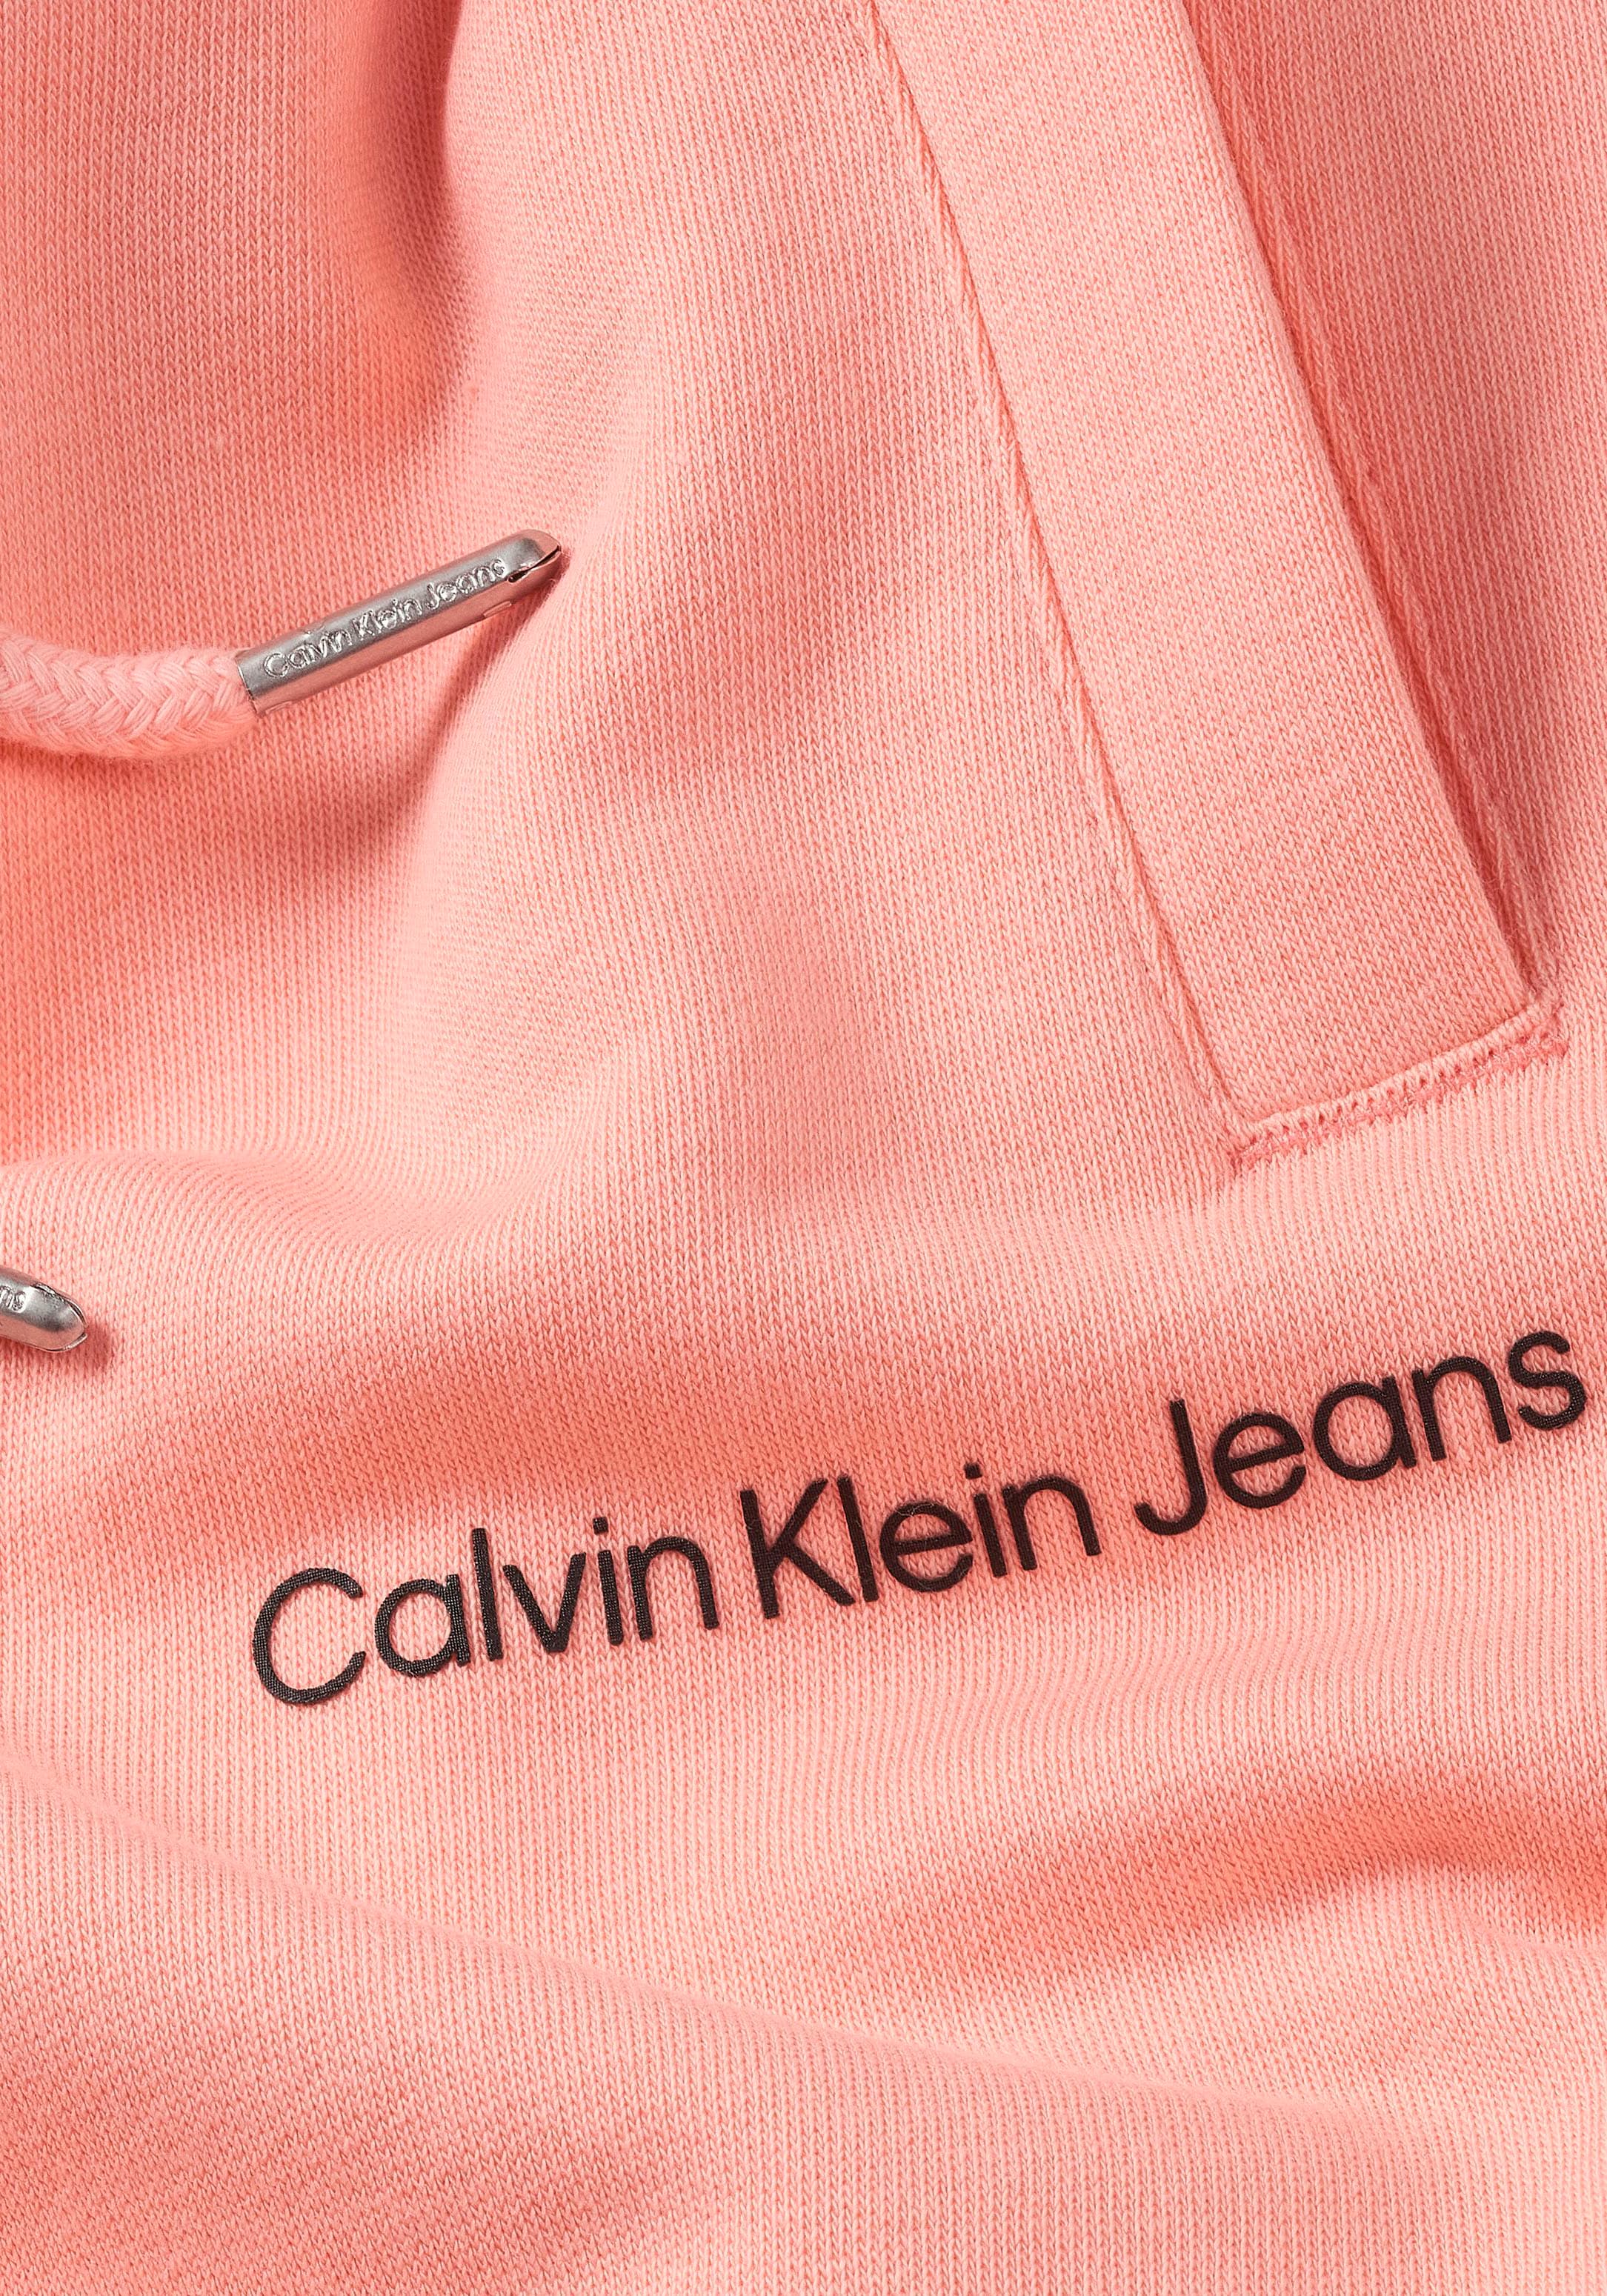 ♕ Calvin Klein Jeans Sweathose, Kinder Kids Junior MiniMe,mit Calvin Klein  Logoschriftzug auf dem Bein versandkostenfrei auf